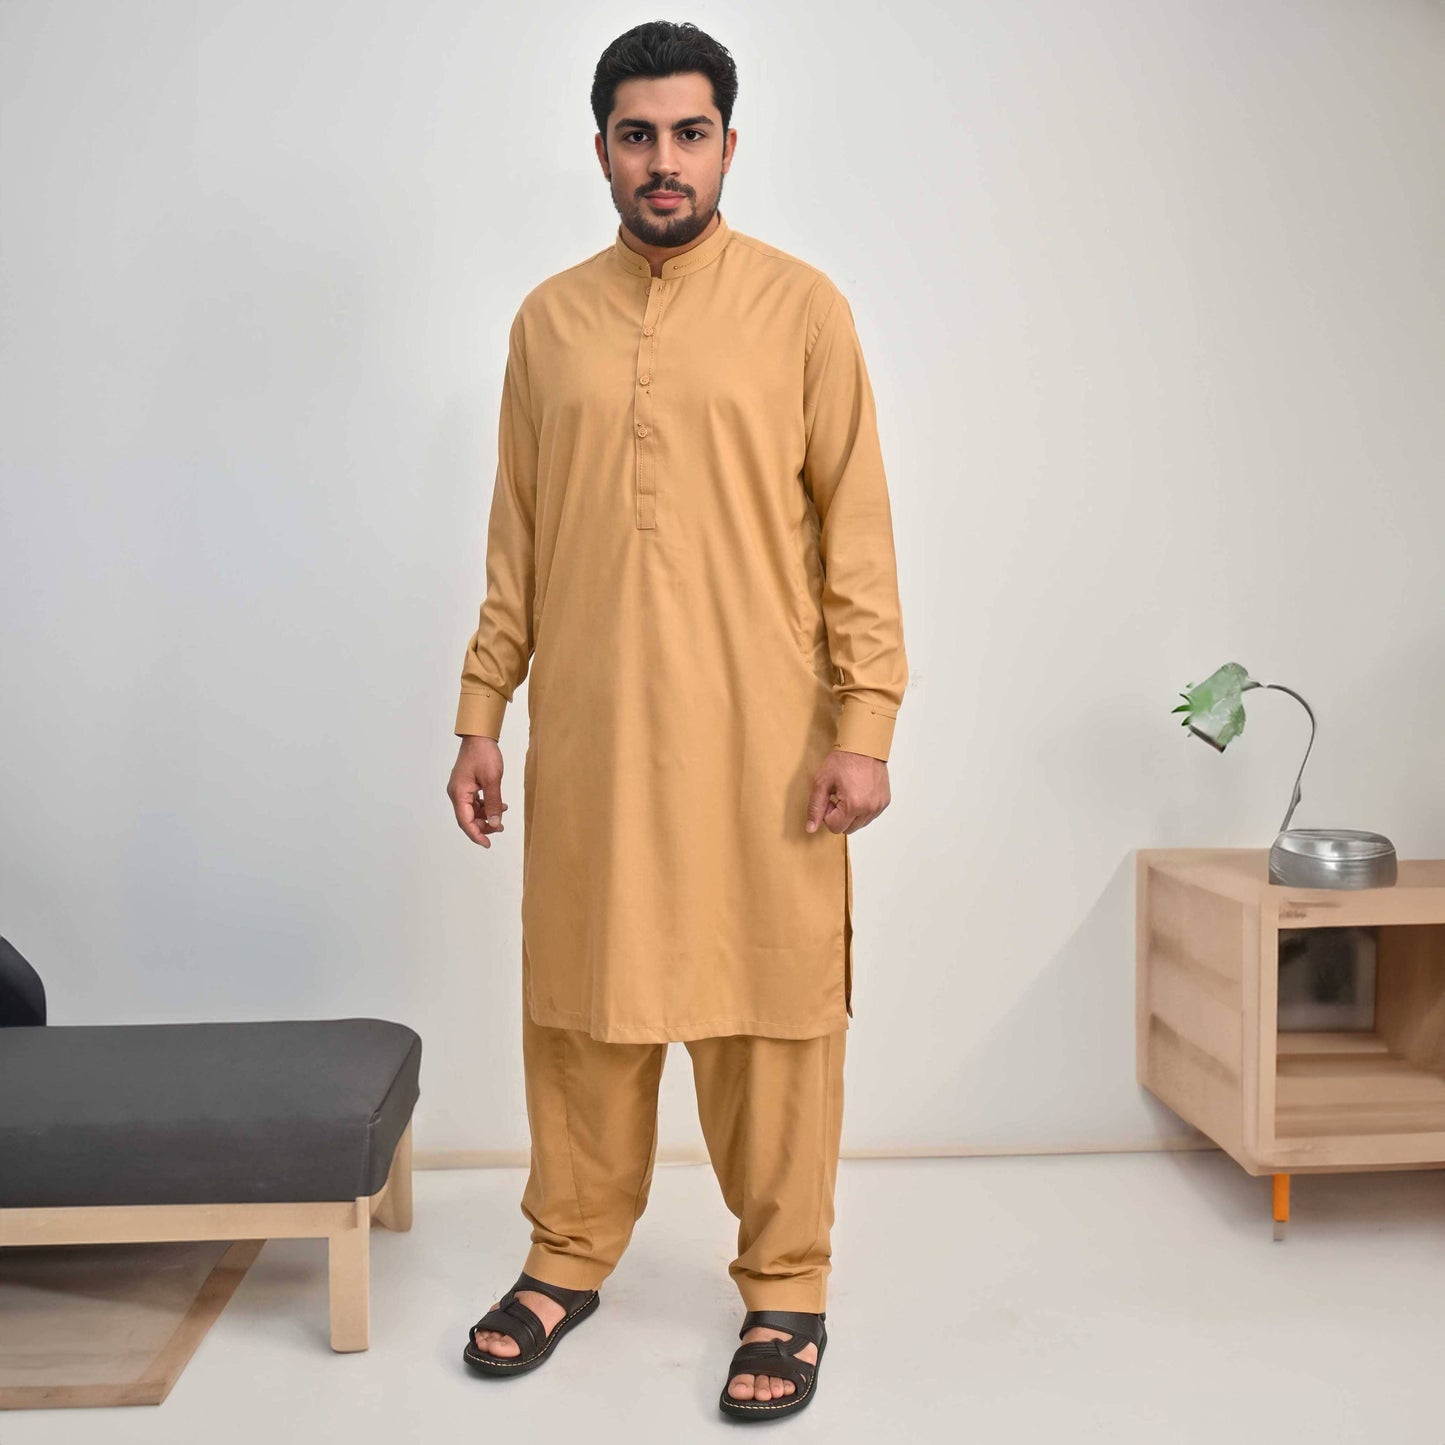 Hud Hud Men's Mandarin Collar Stitched Suit Shalwar Kameez Men's Suit MHJ Brown L 